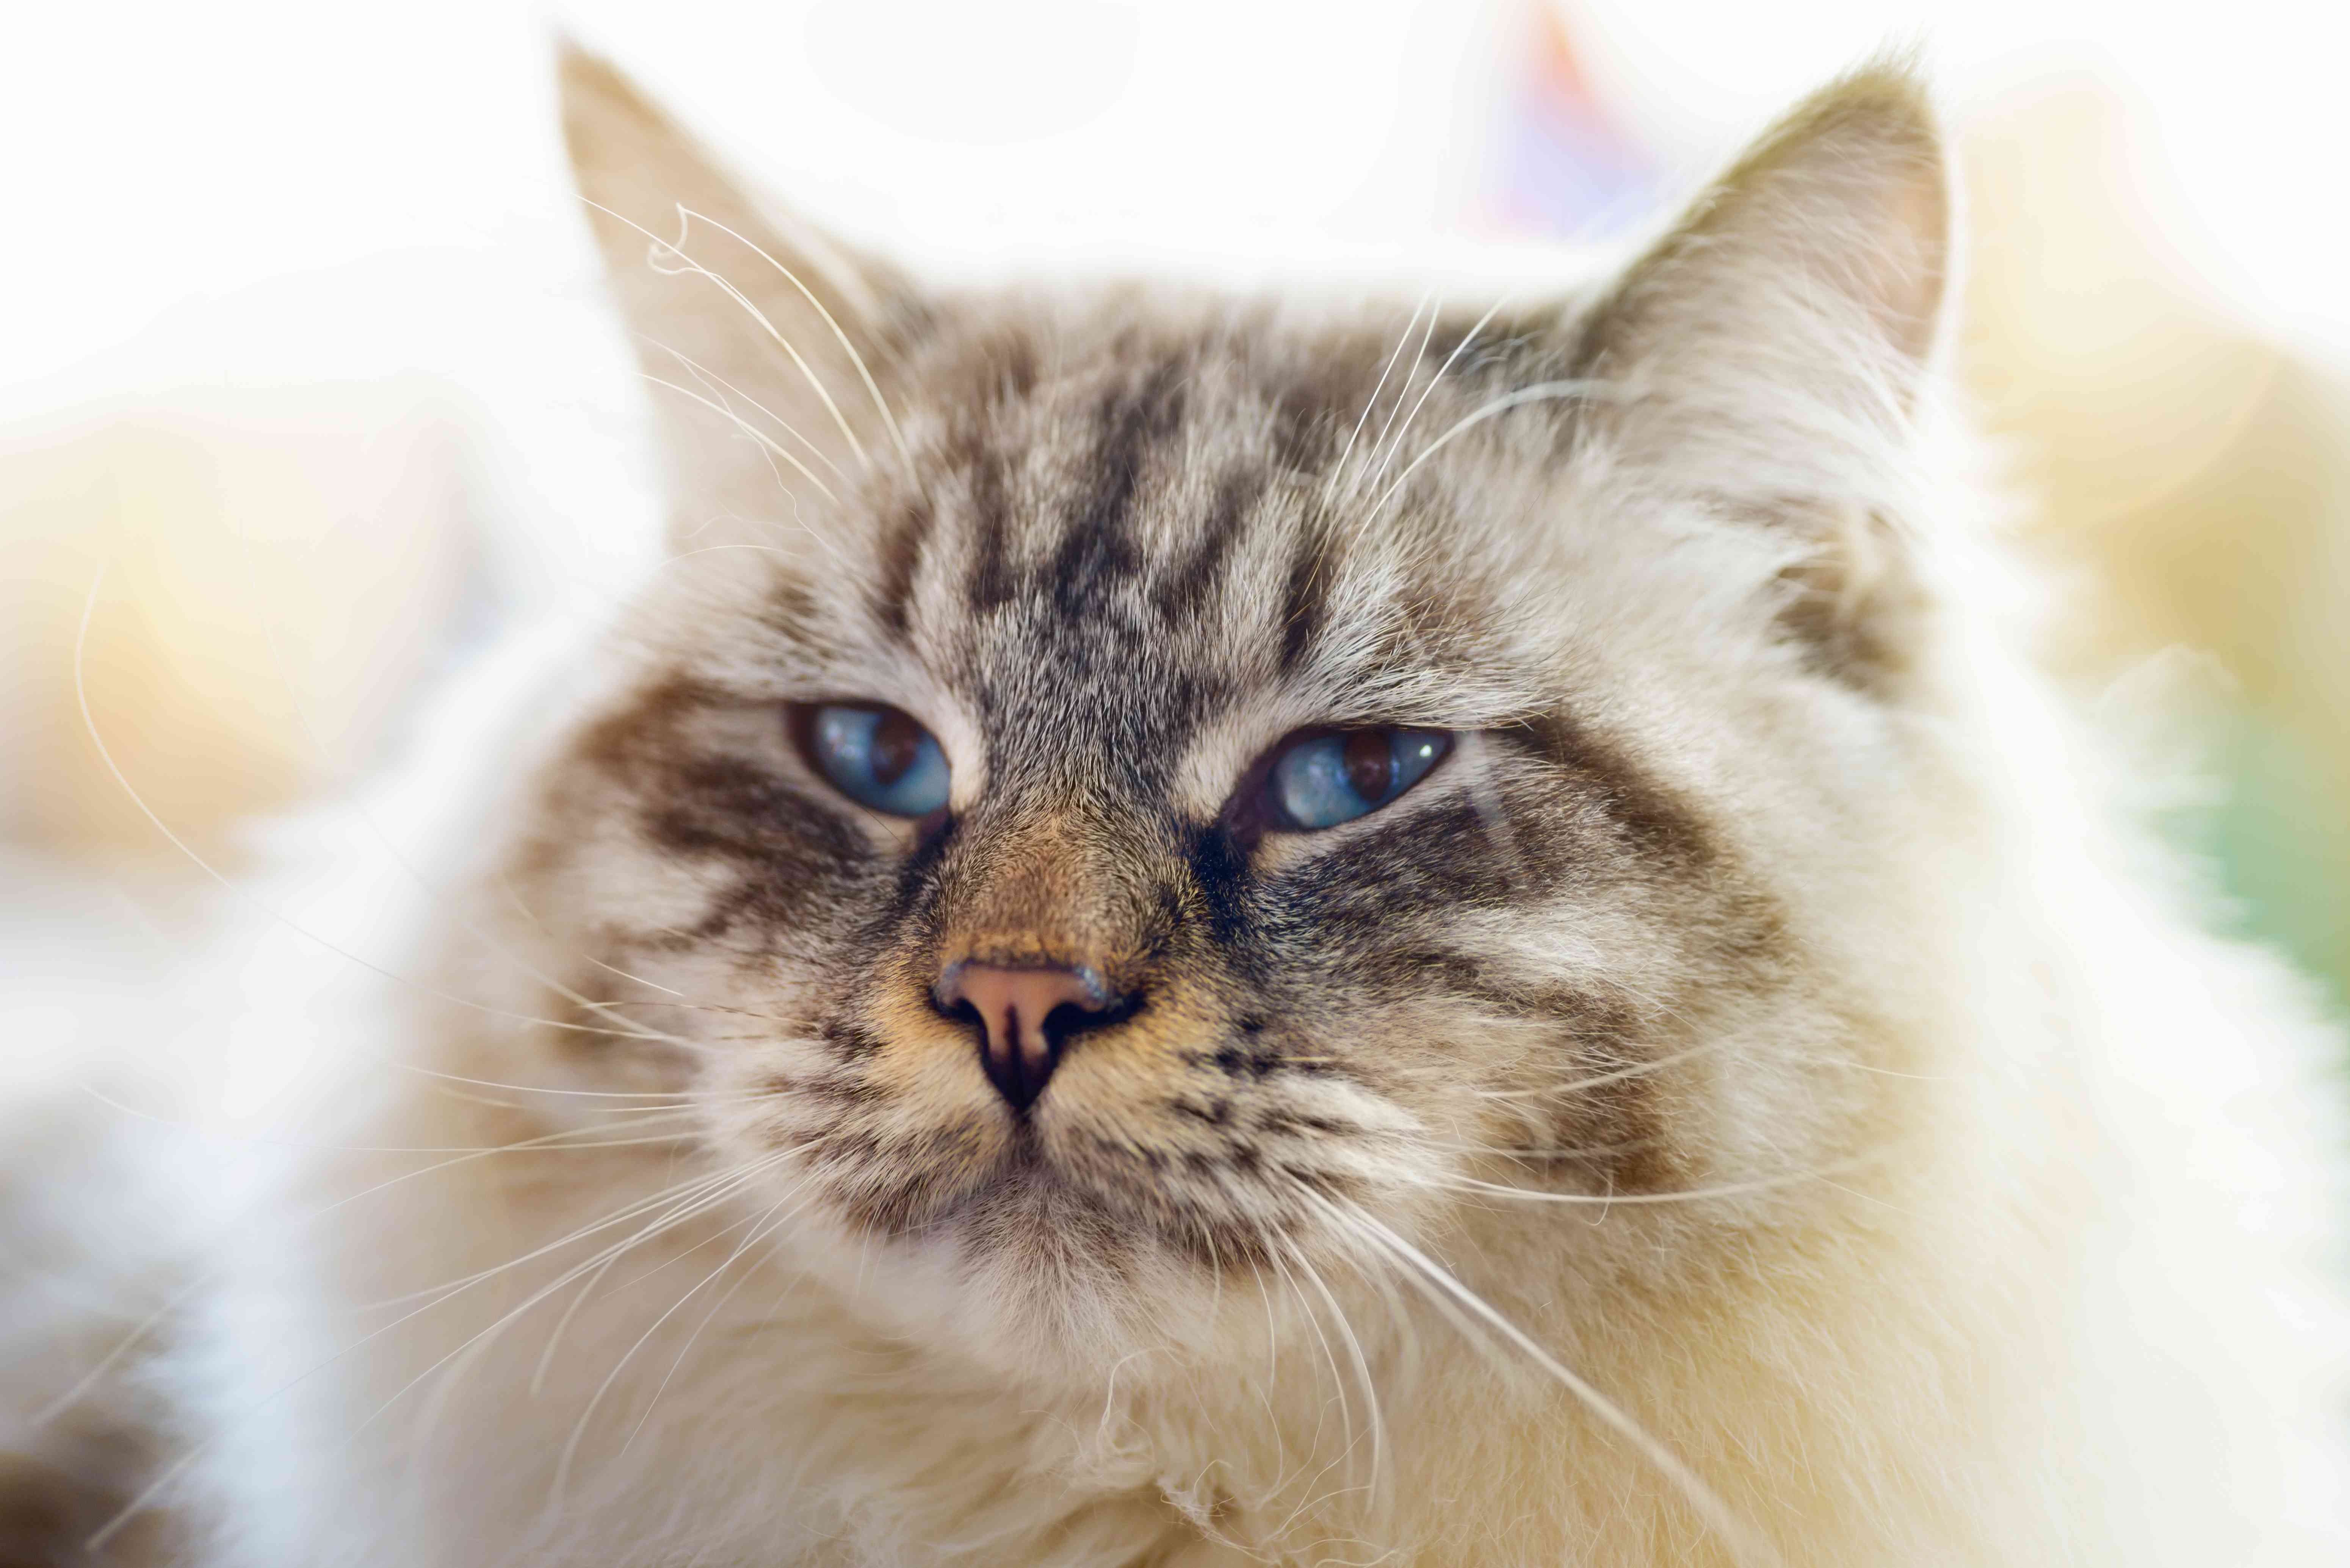 A close-up of a ragamuffin cat.